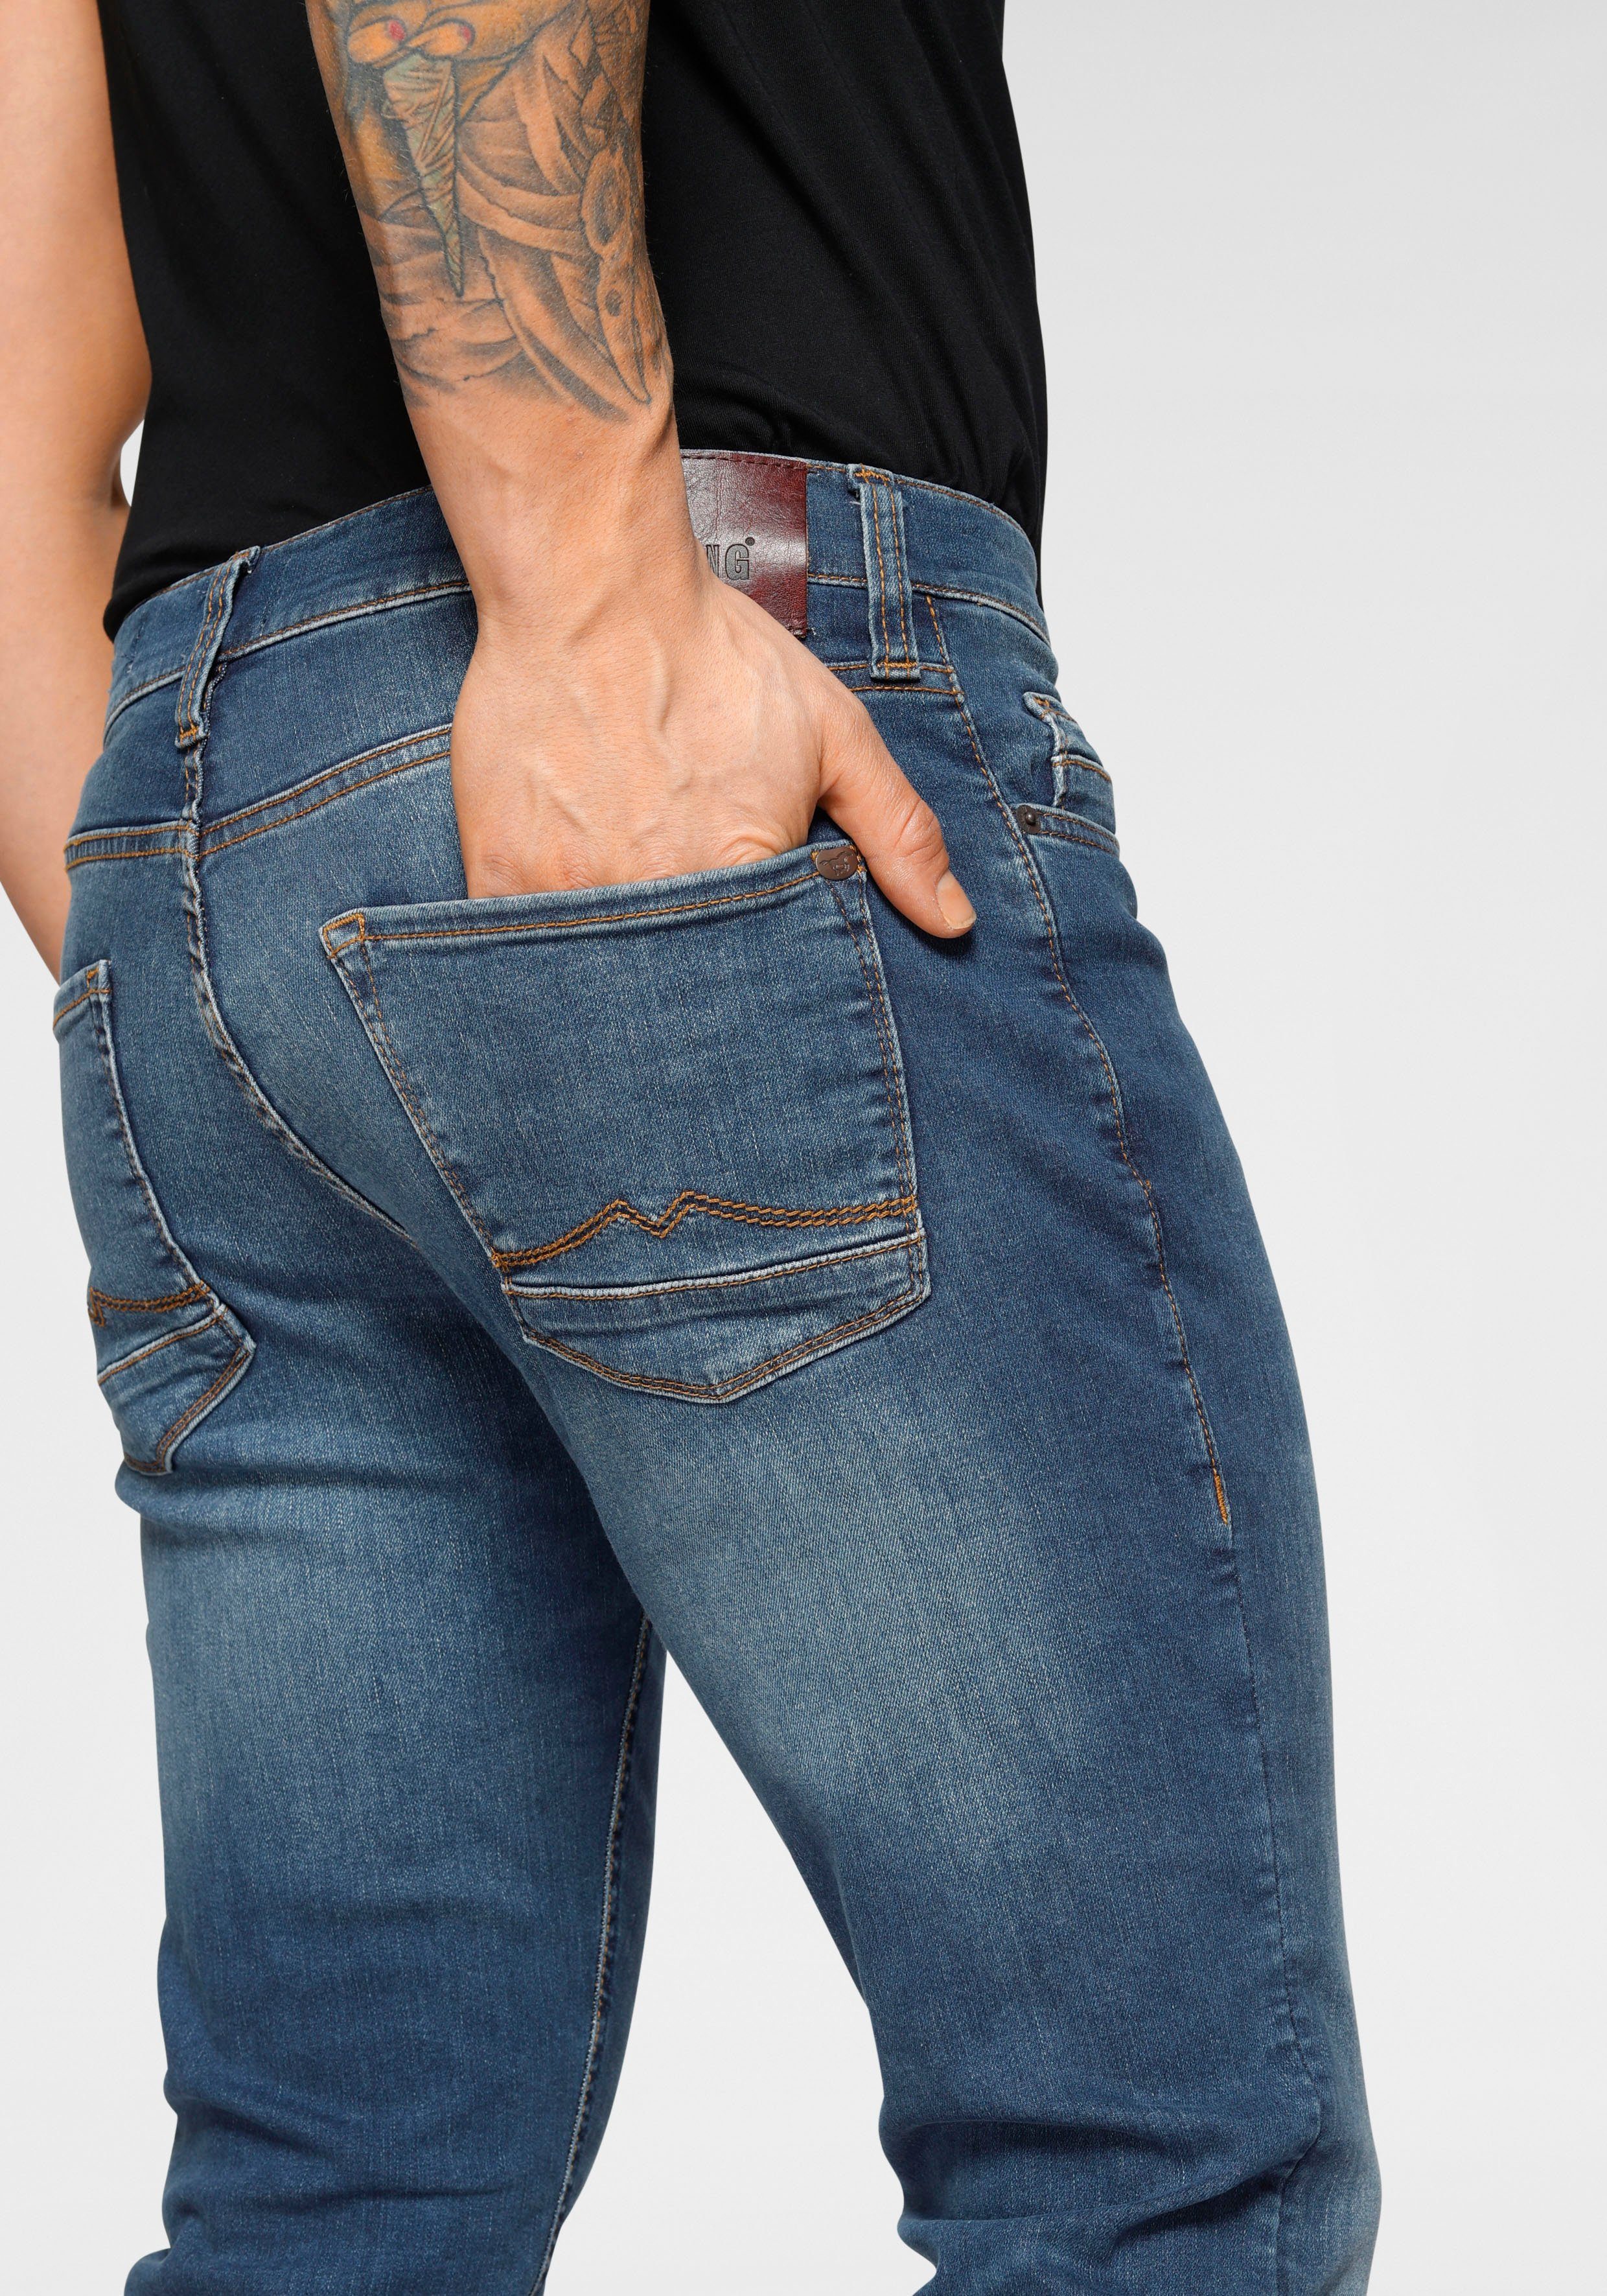 Slim MUSTANG Look Style leichter Vegas 5-Pocket-Jeans used medium dark